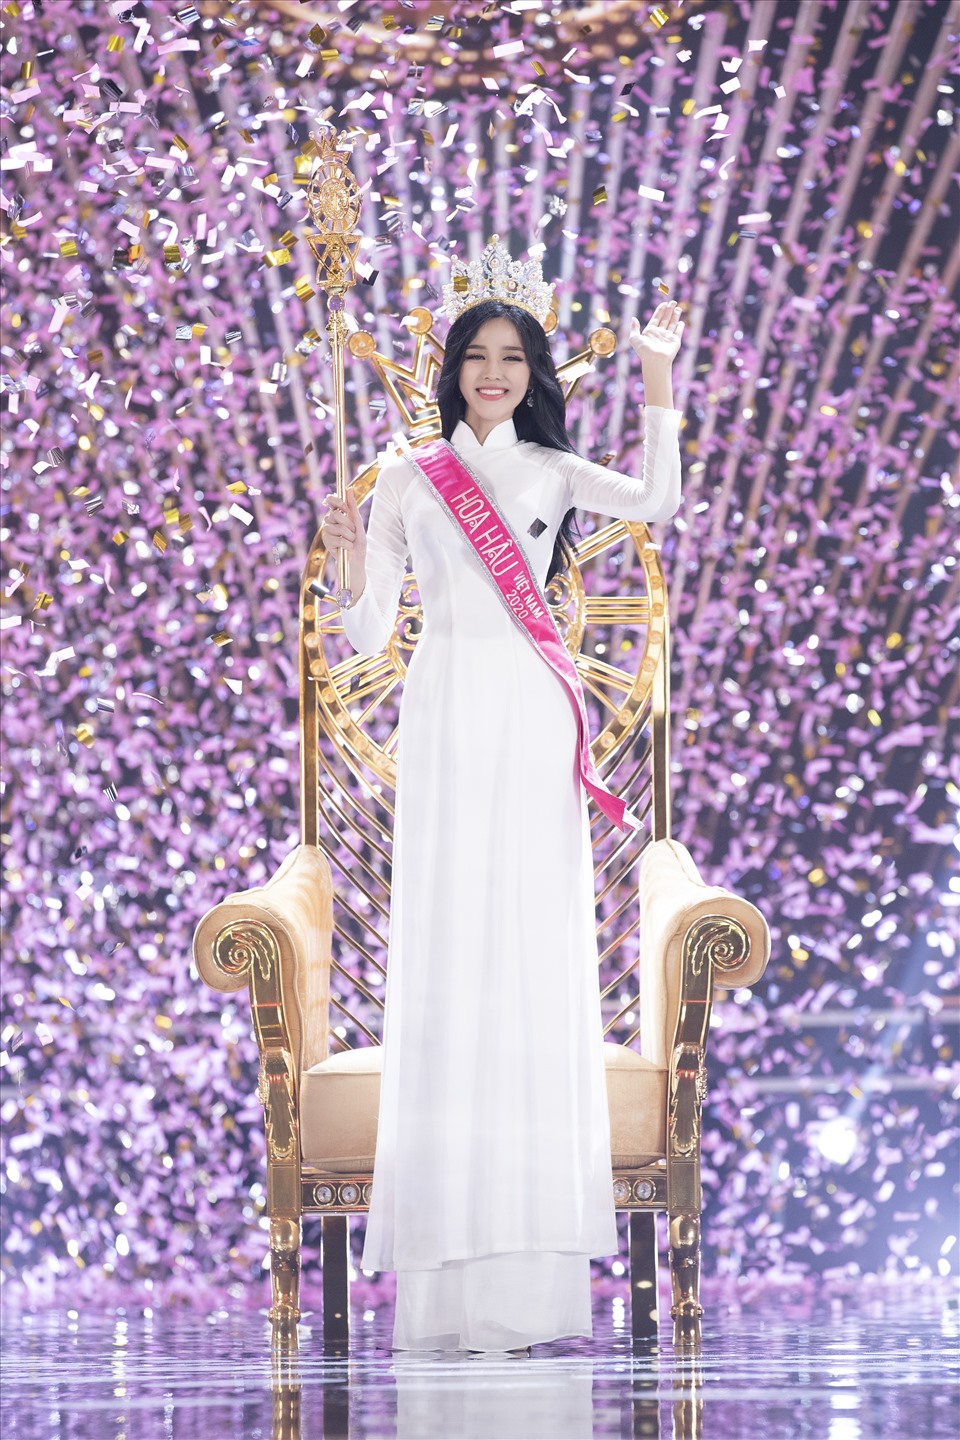 Đỗ Thị Hà đã chính thức trở thành Tân Hoa hậu Việt Nma 2020. Ảnh: Kiếng Cận.